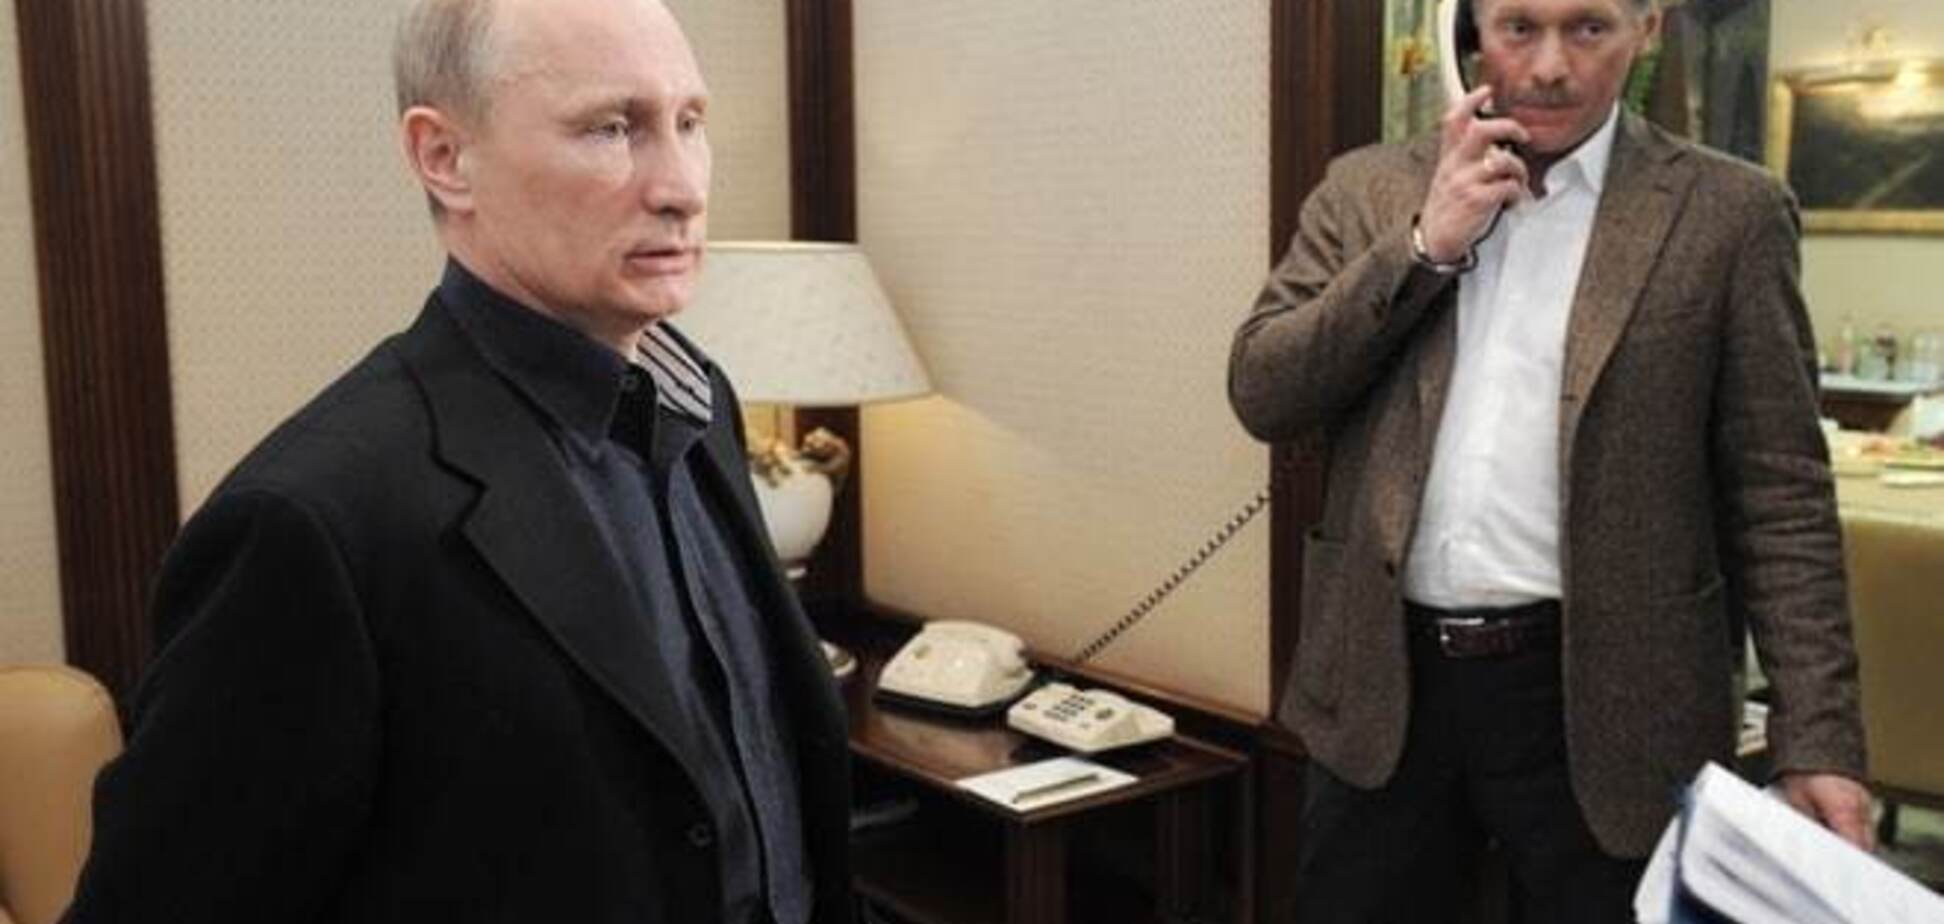 Після історії з годинником Пєскова Путін затіяв чищення в Кремлі - Bloomberg